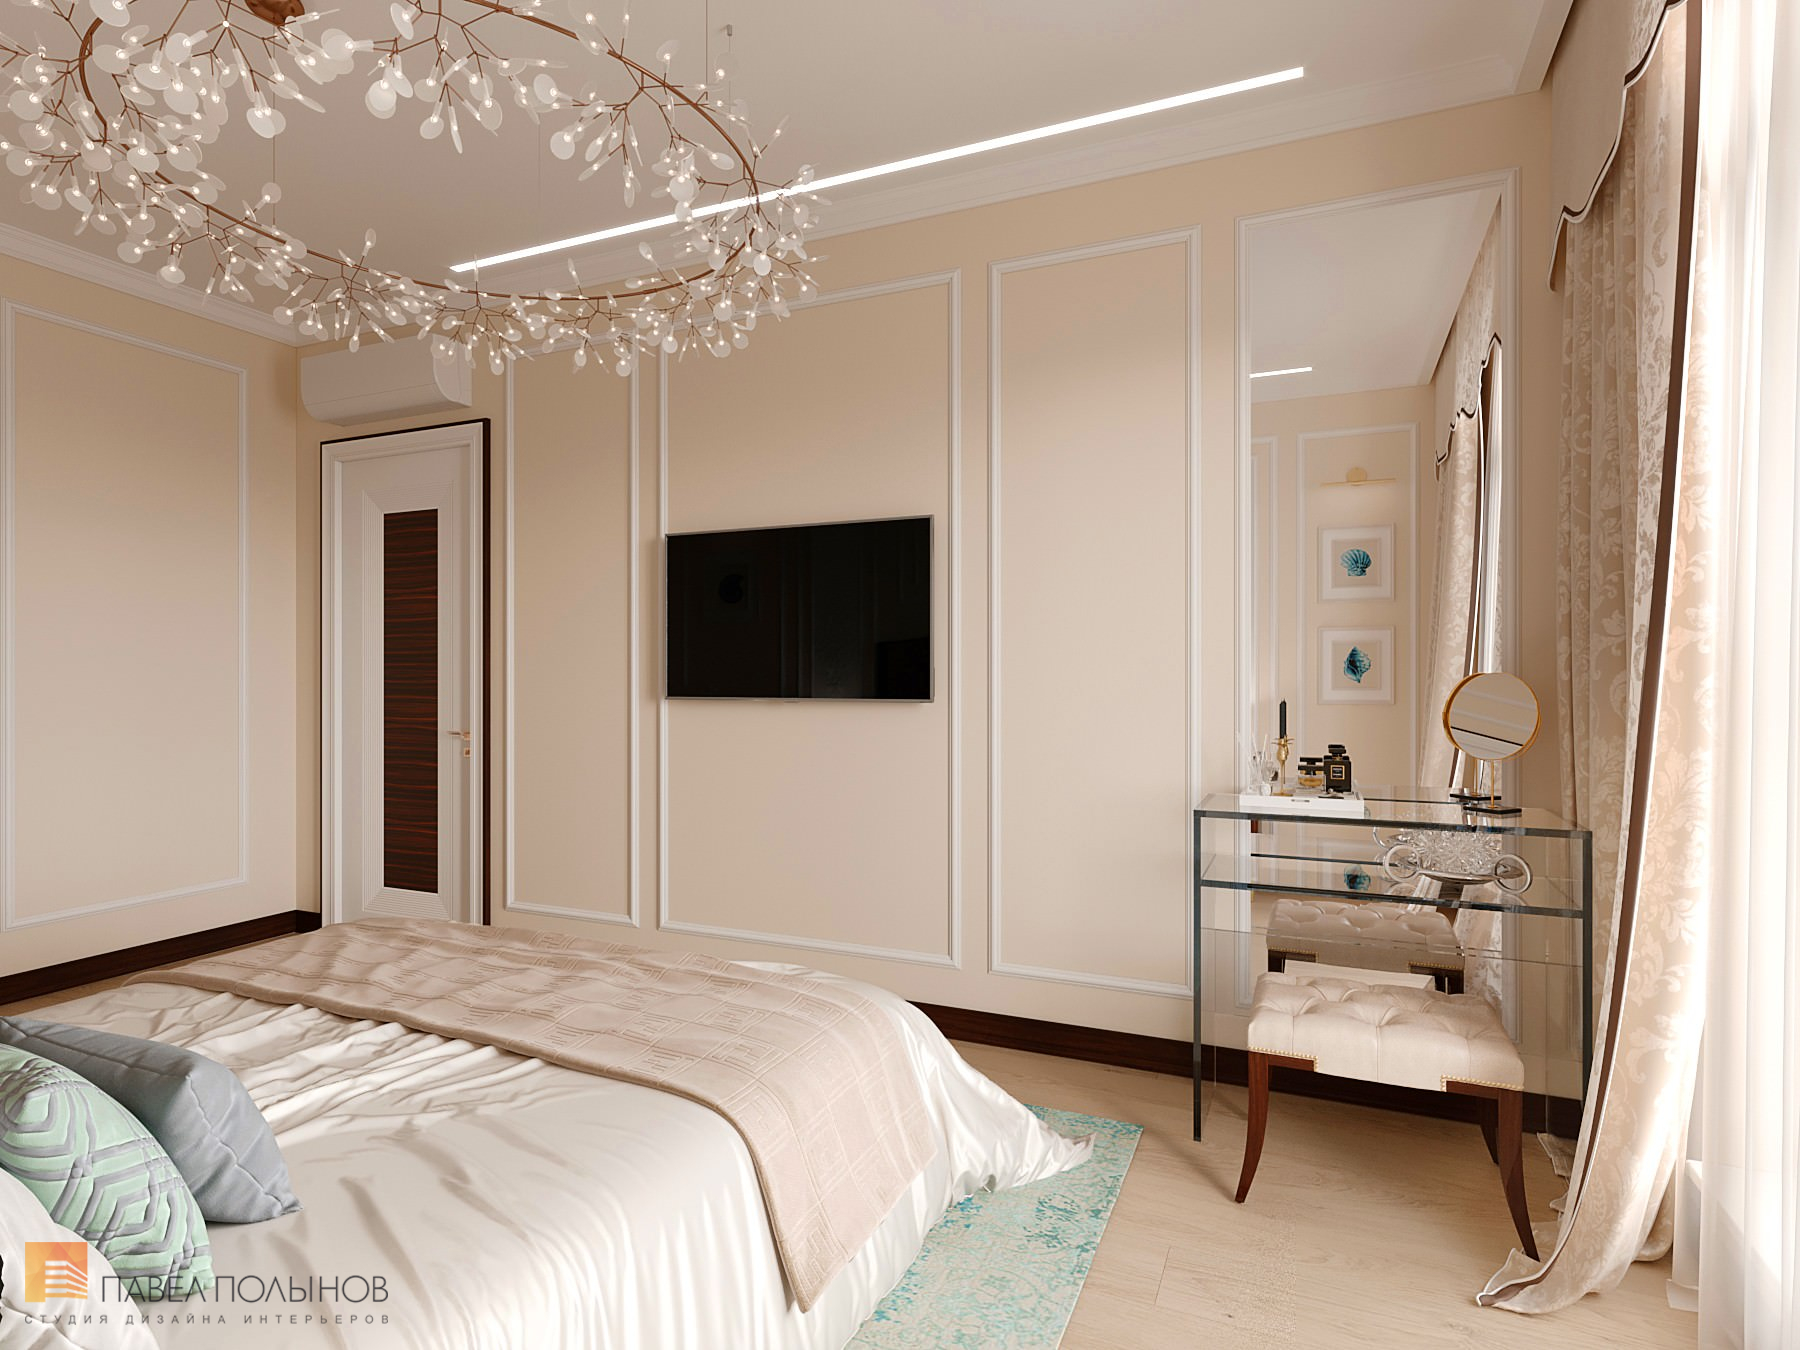 Фото дизайн интерьера спальни из проекта «Интерьер квартиры в стиле неоклассики с элементами ар-деко, ЖК «Rich Art Club», 75 кв.м.»